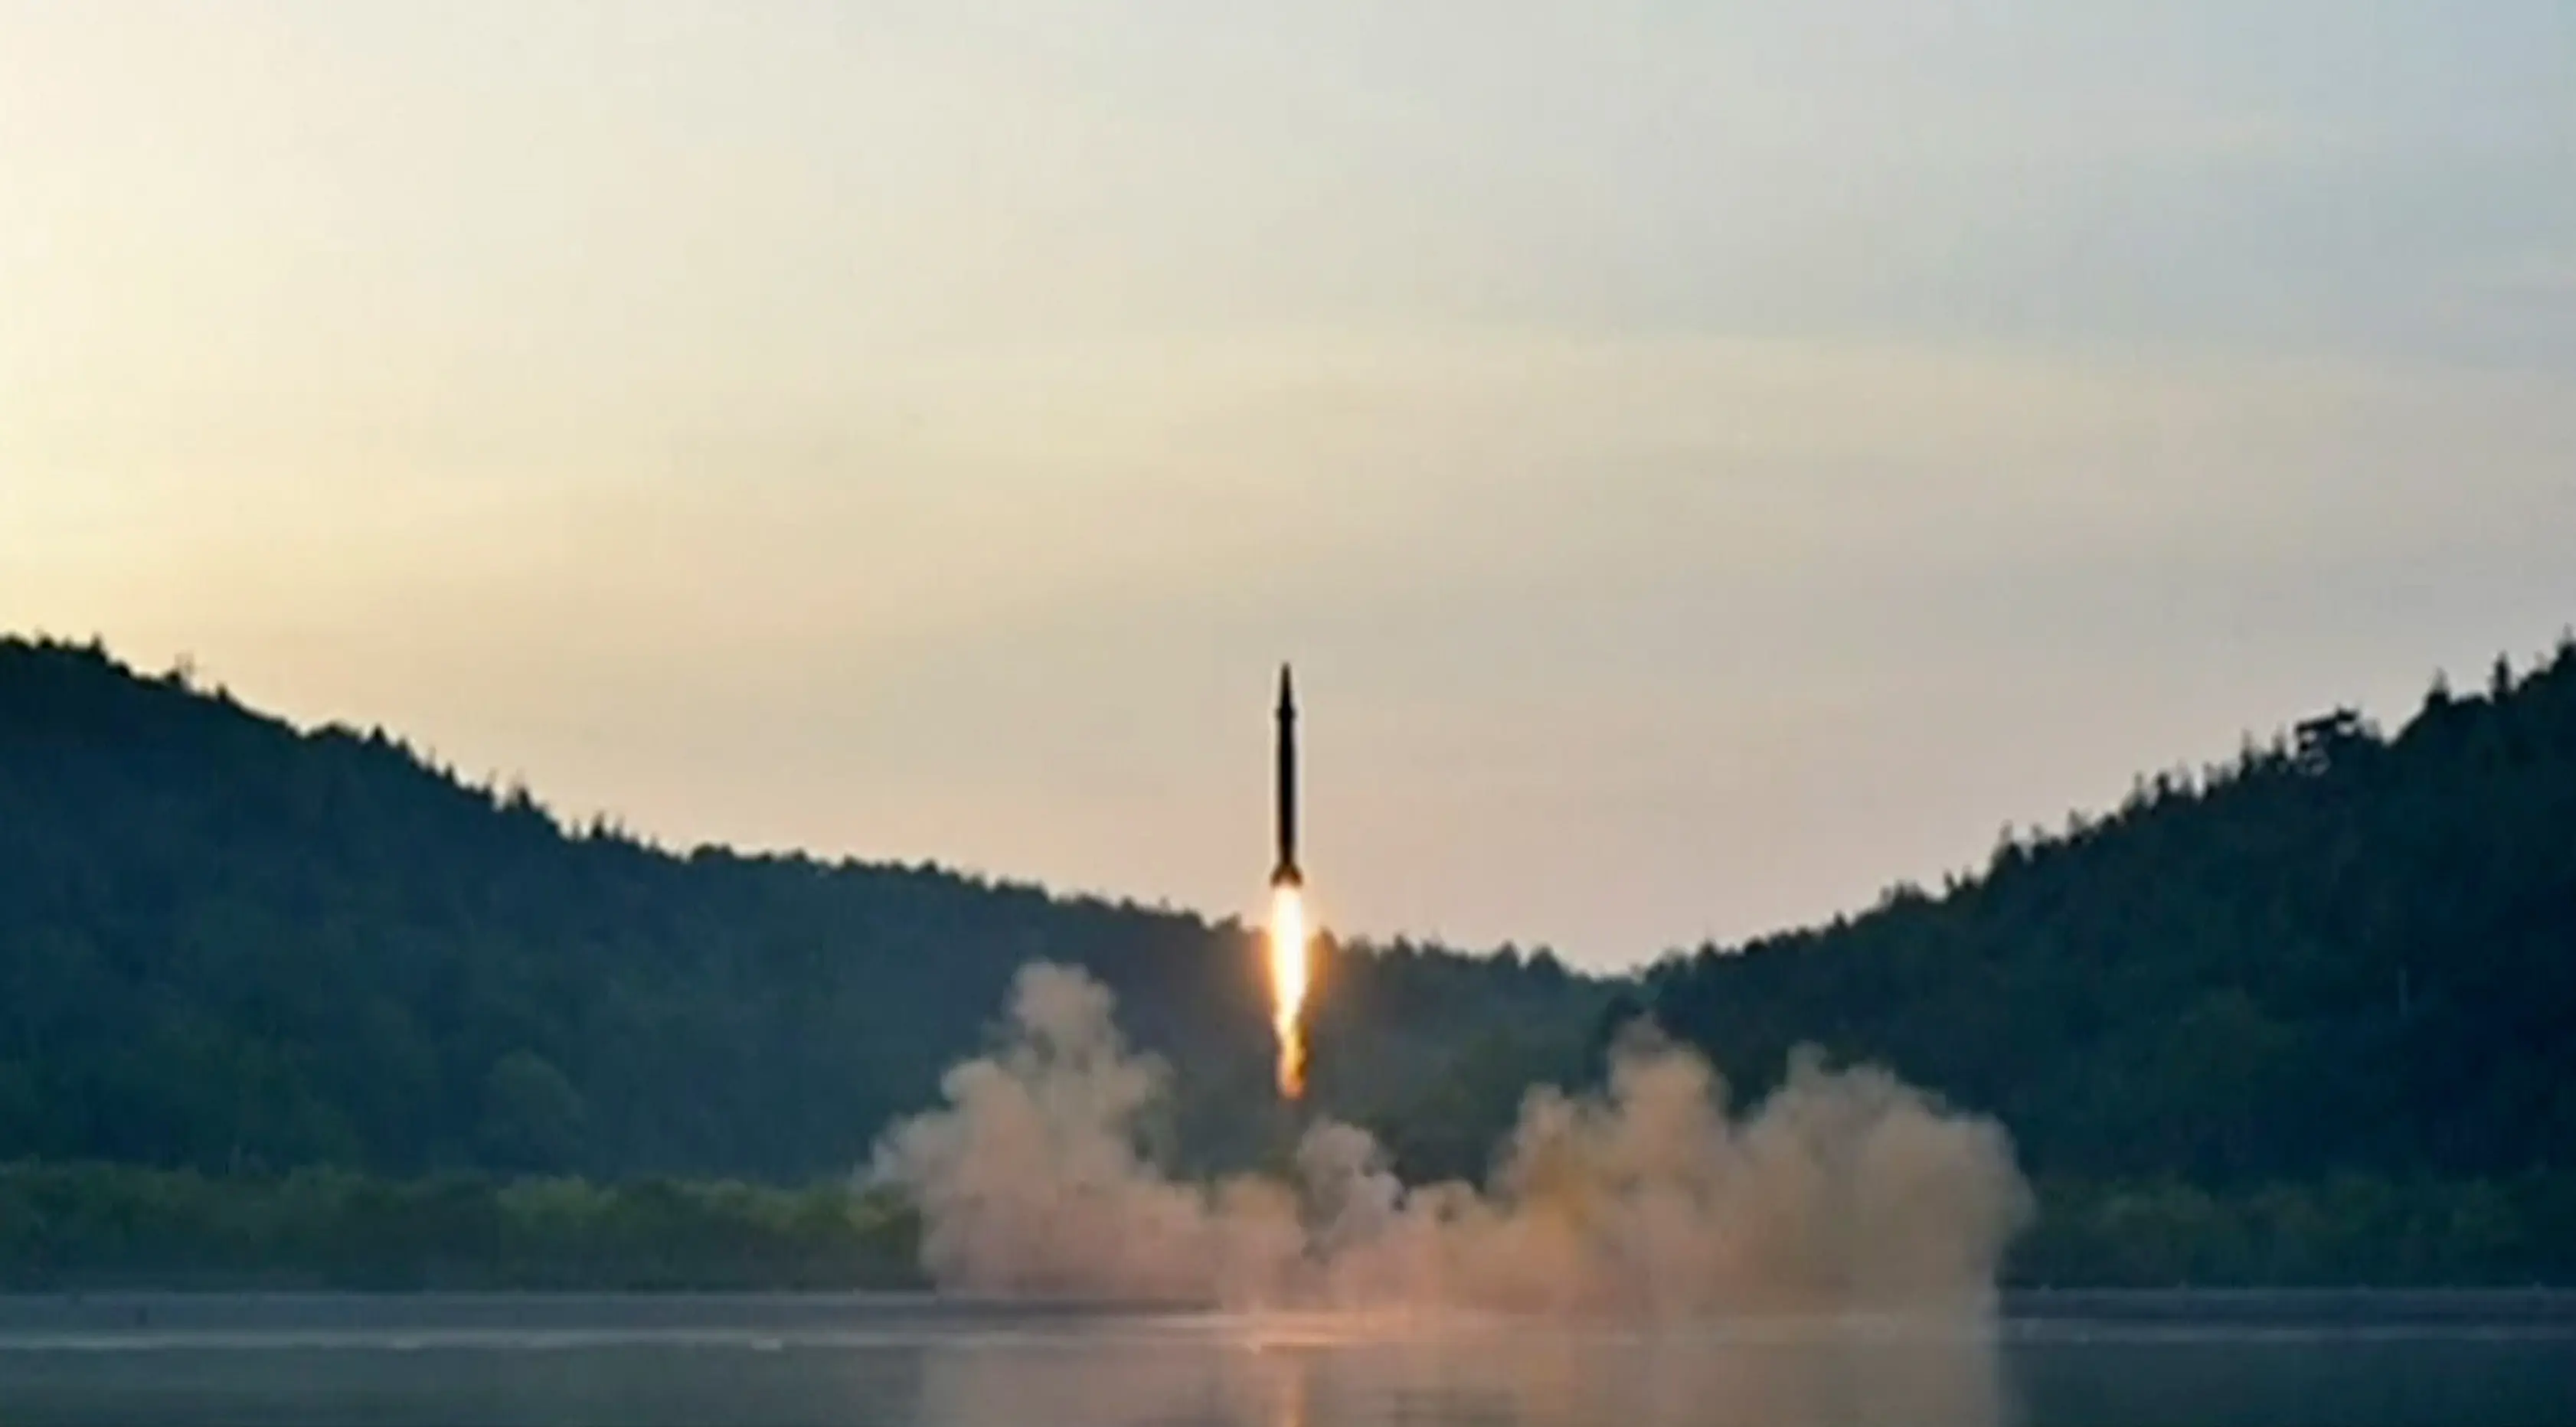 Peluncuran rudal balistik terbaru milik Korea Utara, Selasa (30/5). Uji coba balistik yang berlangsung sukses ini diklaim telah menggunakan sistem kendali yang lebih akurat. (AP Photo/KCNA)